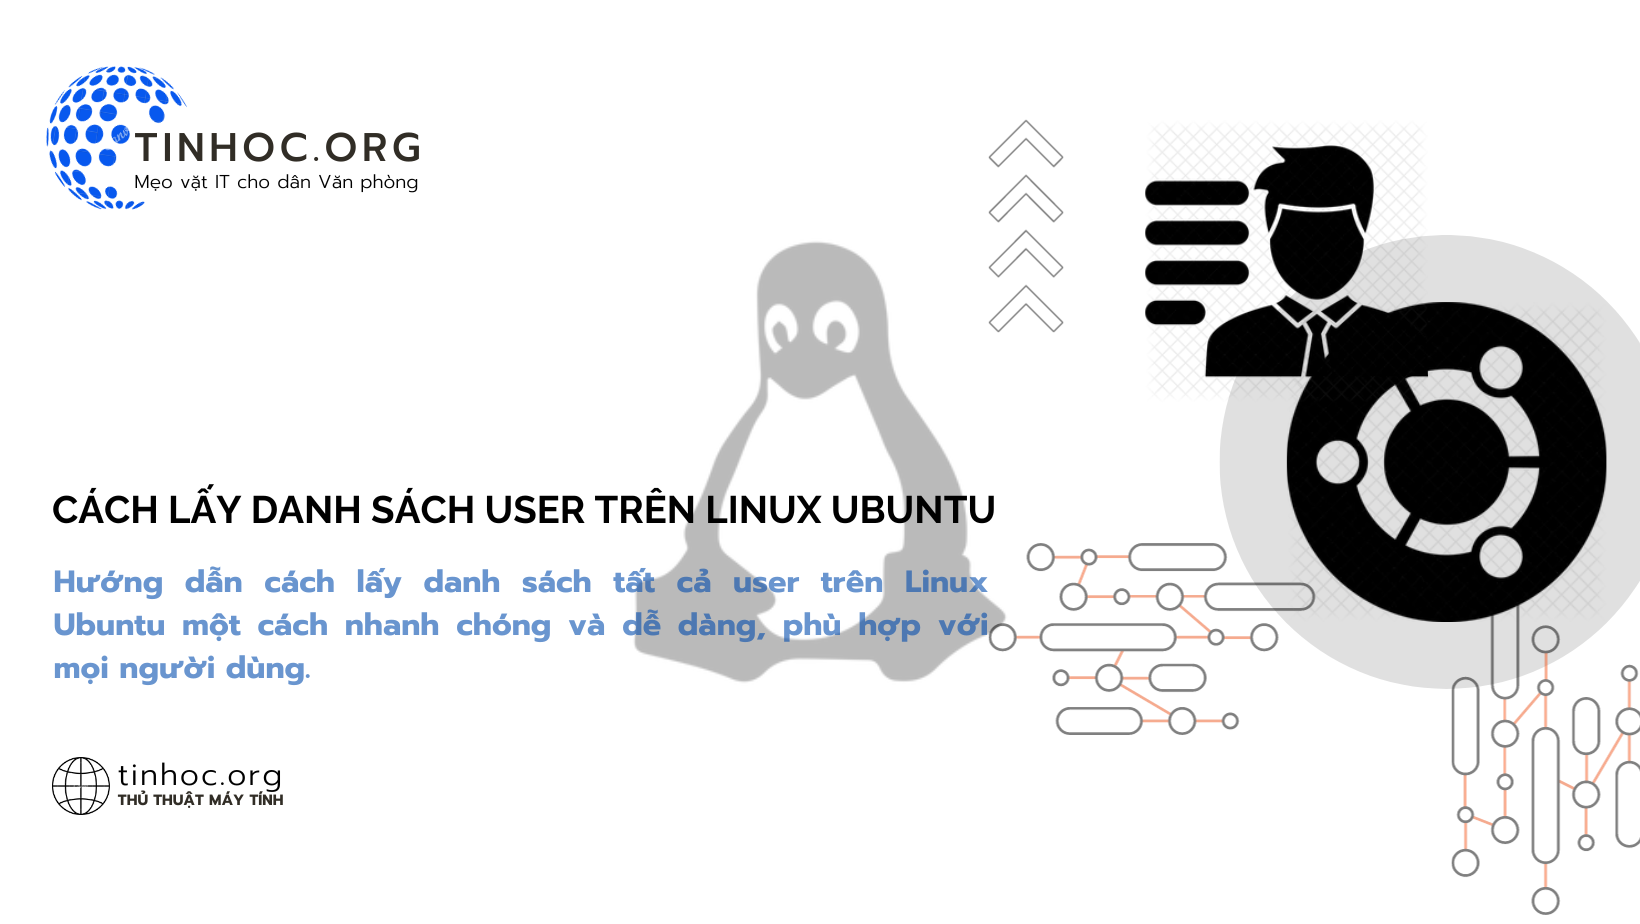 Cách lấy danh sách user trên Linux Ubuntu